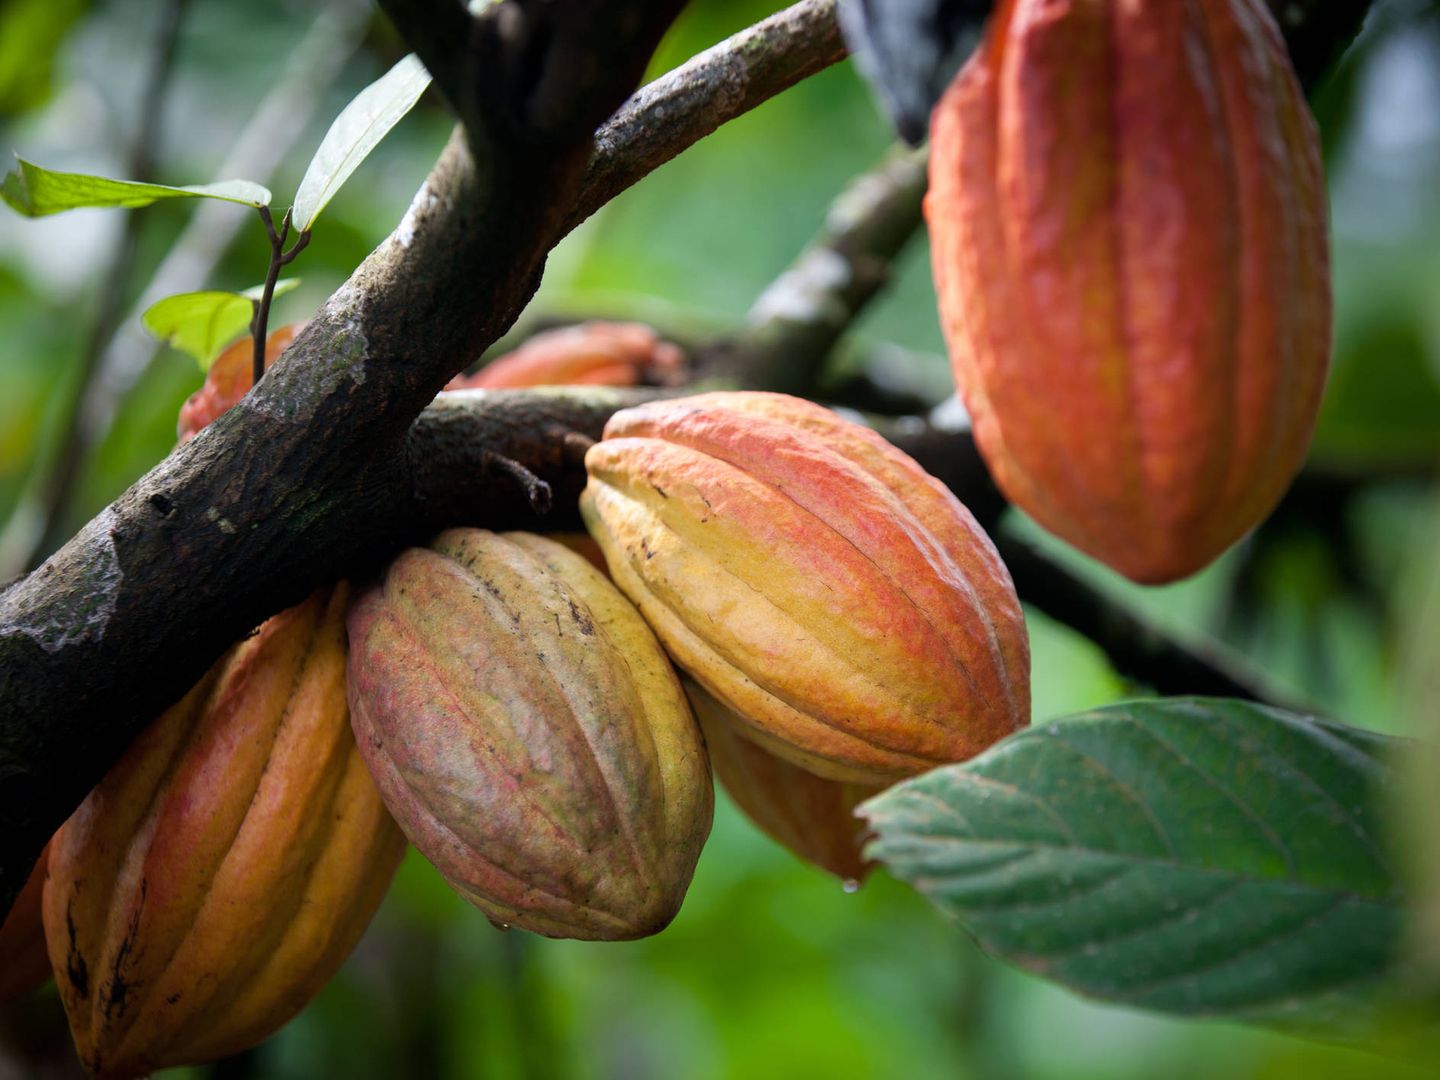 La planta del cacao tendrá que plantarse en altitudes más altas. (iStock)